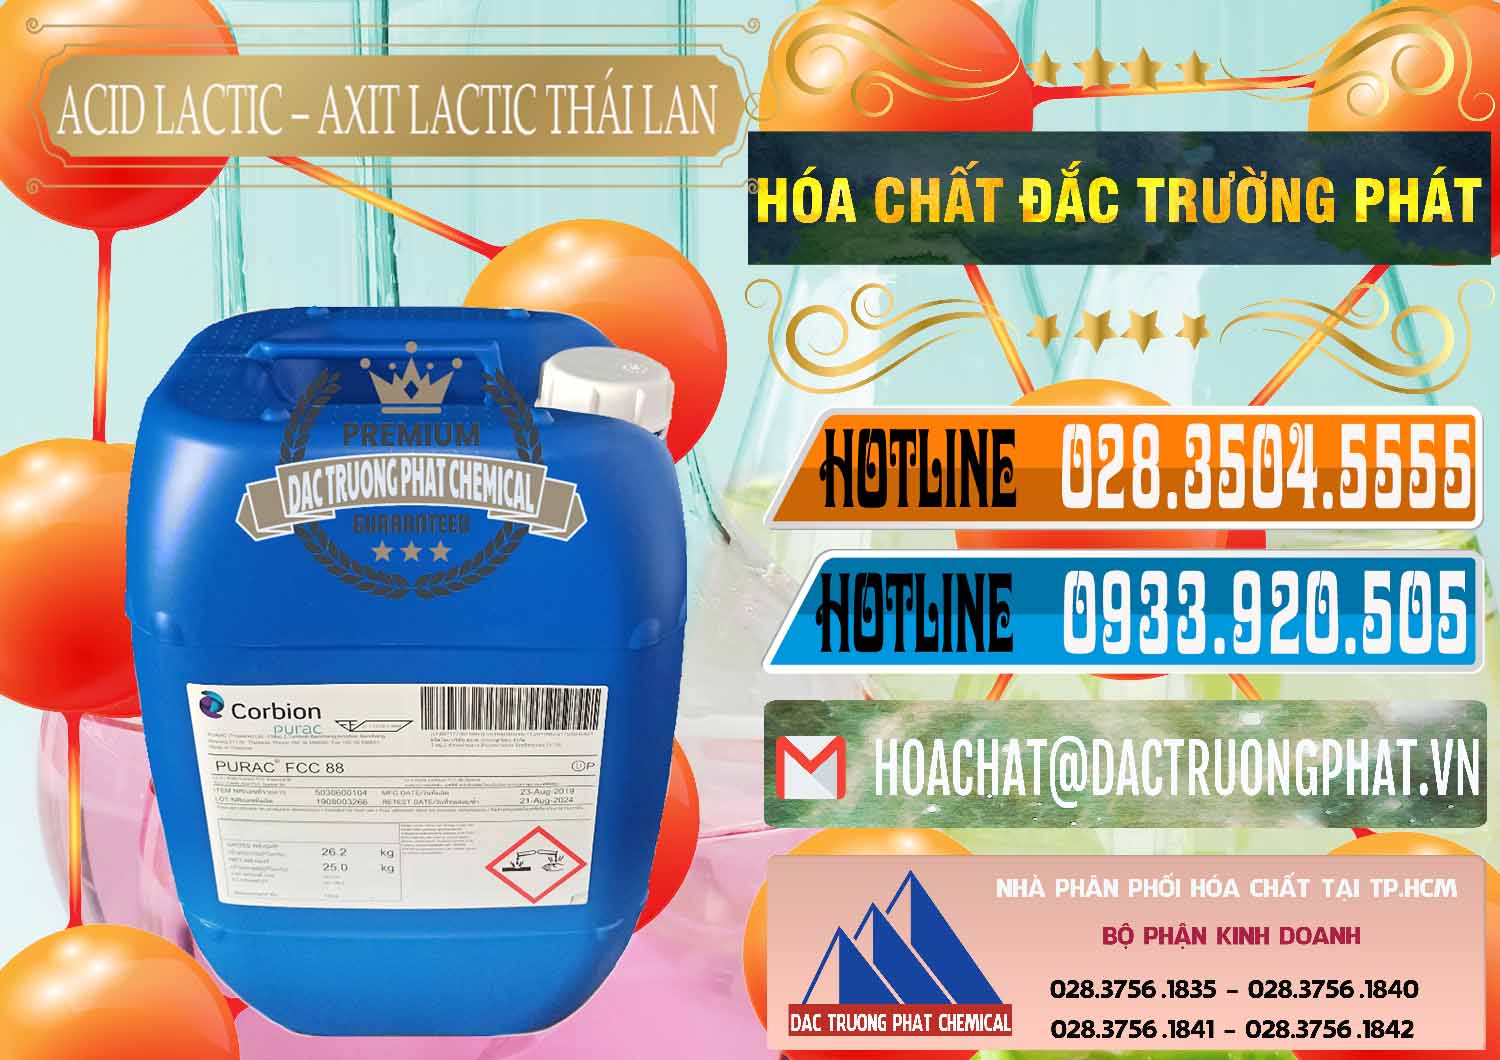 Nơi kinh doanh và bán Acid Lactic – Axit Lactic Thái Lan Purac FCC 88 - 0012 - Công ty kinh doanh và cung cấp hóa chất tại TP.HCM - stmp.net